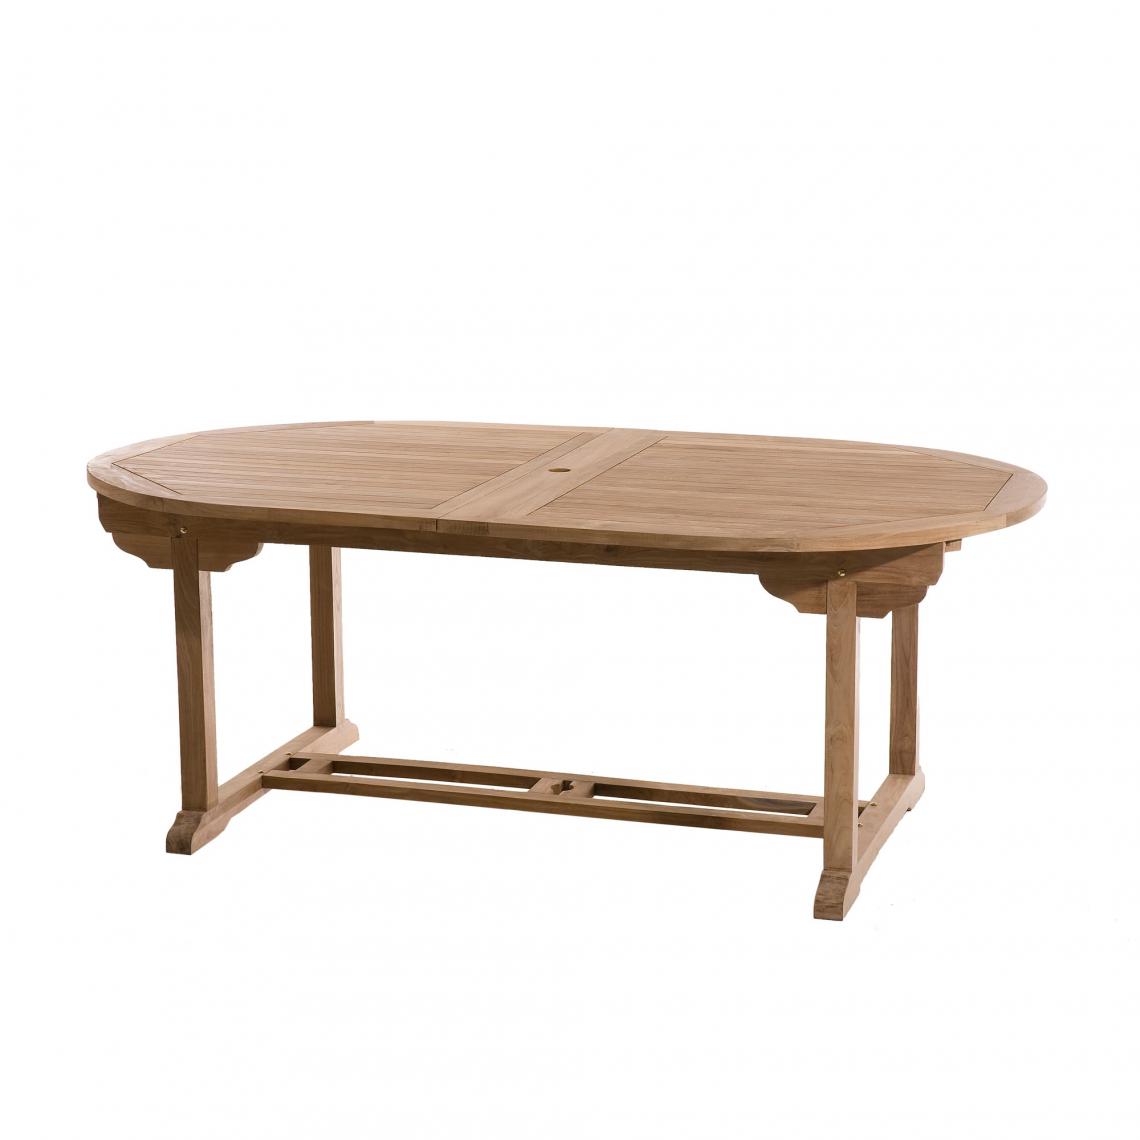 MACABANE - Table ovale double extension 10/12 personnes en teck massif - Tables de jardin